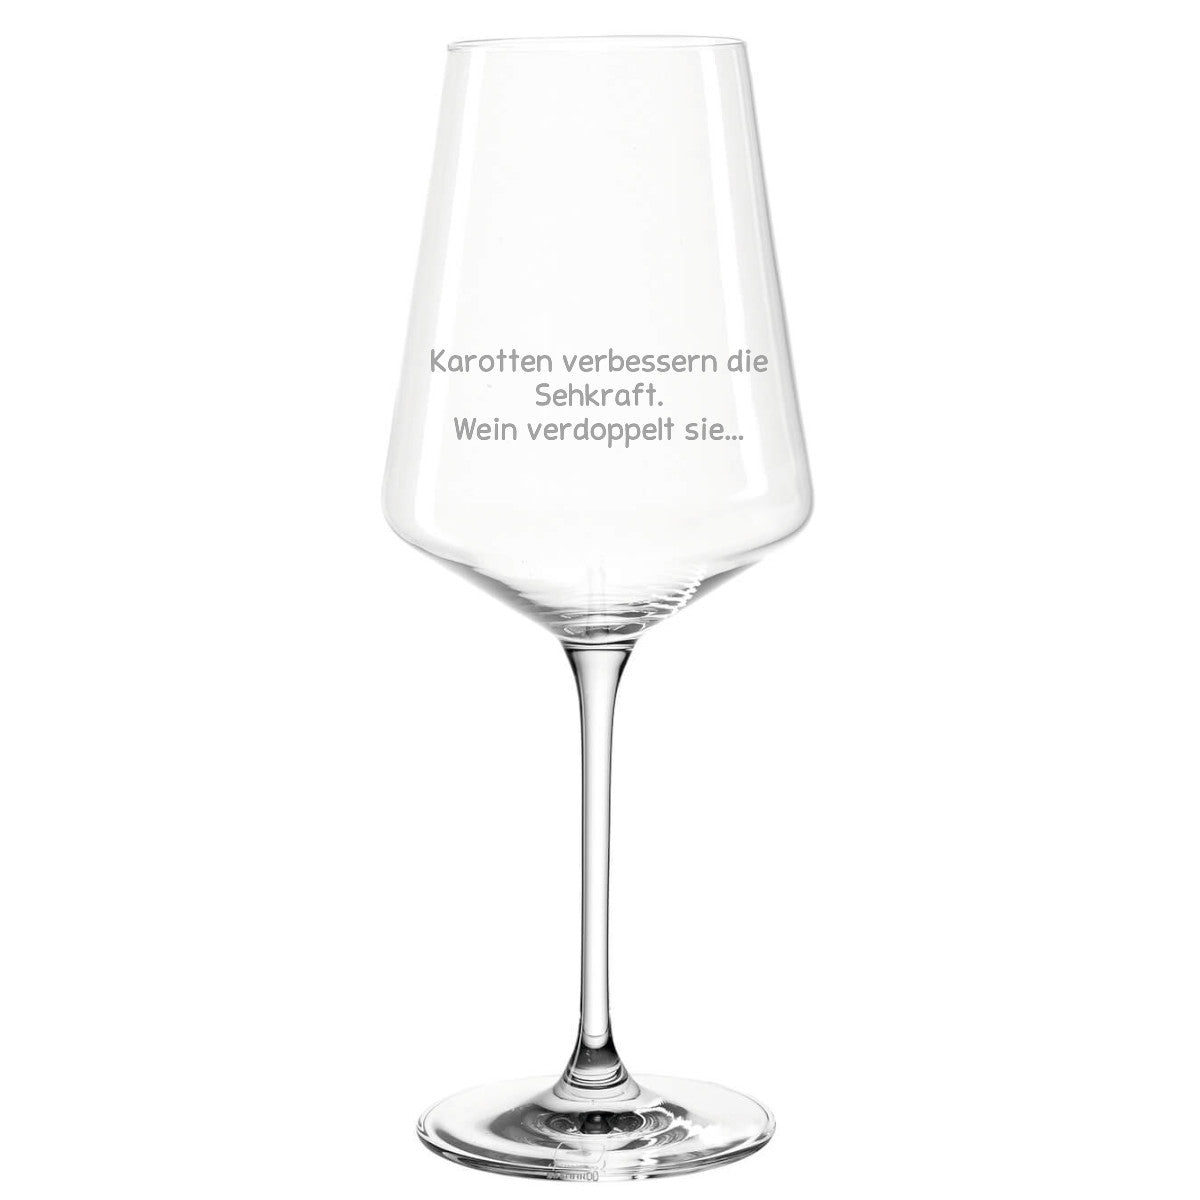 SEHKRAFT - Premium Weinglas - Weinspirits